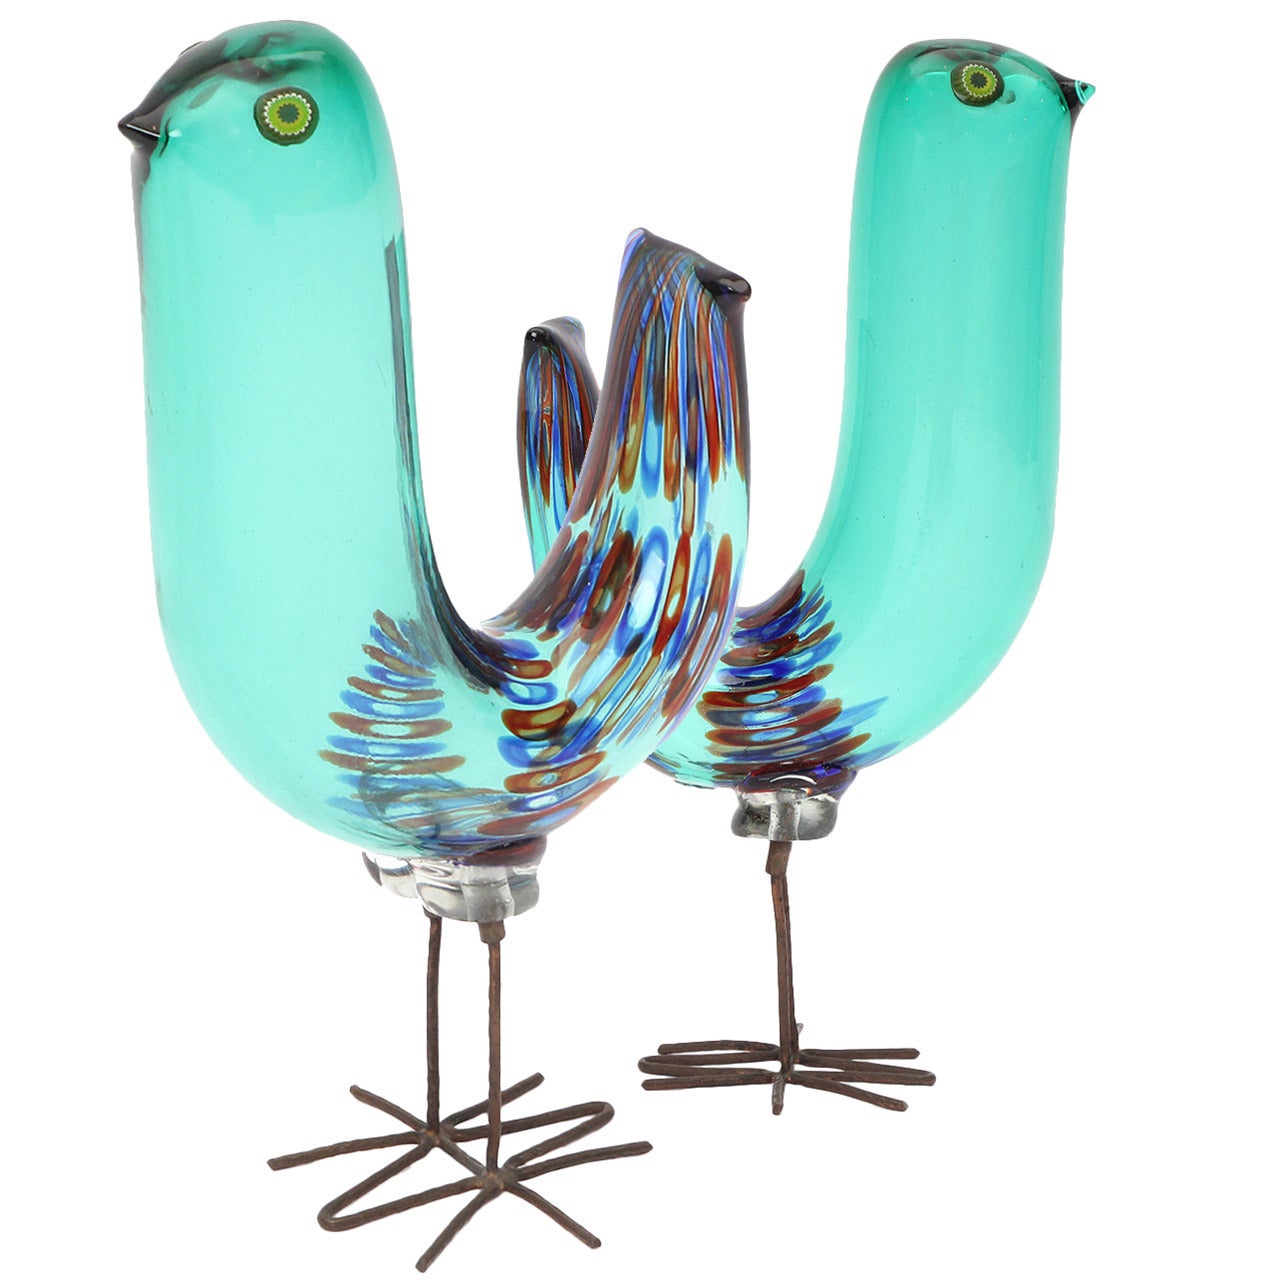 Pulcino Glass Bird by Alessandro Pianon